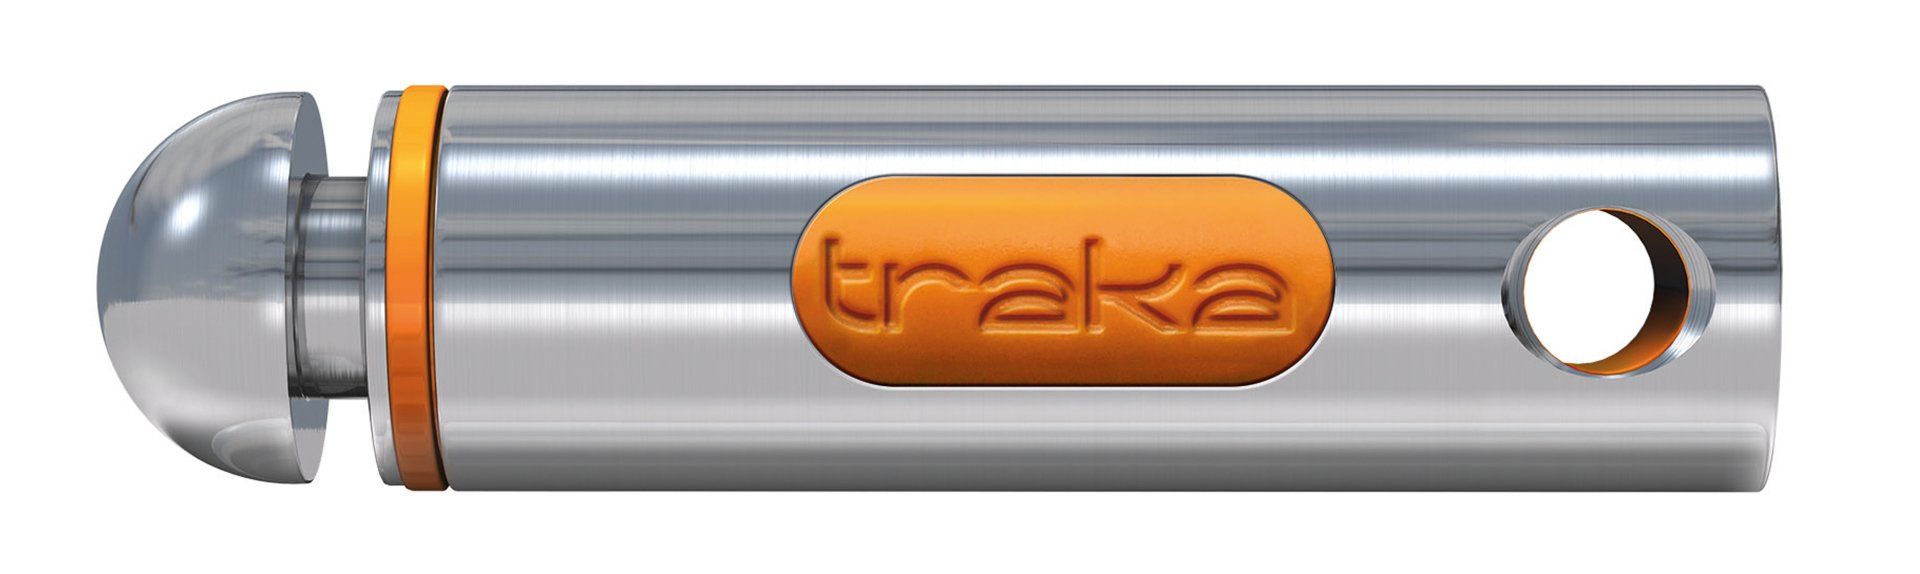 Traka - Elektronische intelligente Schlüsselschränke und Fachanlagen